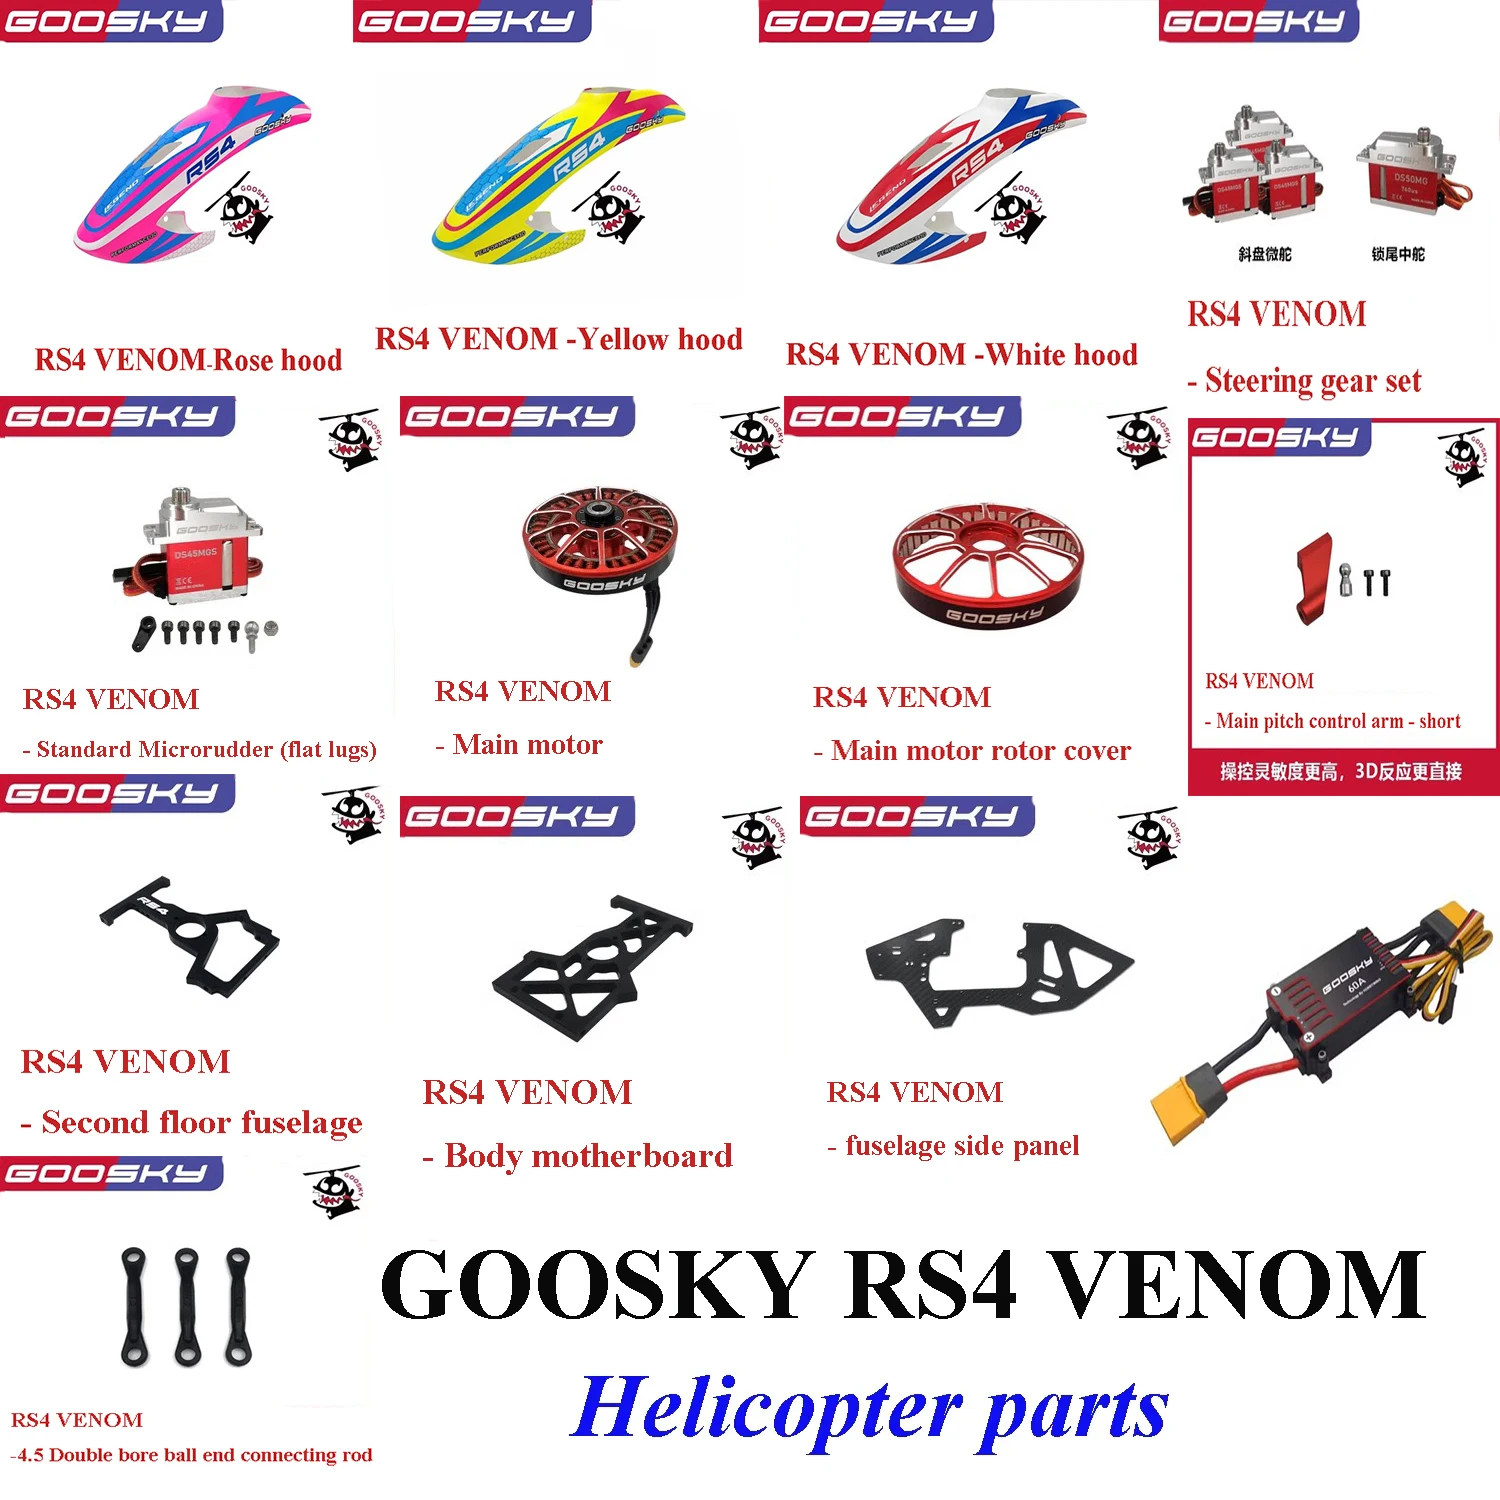 

GOOSKY RS4 VENOM Запчасти для радиоуправляемого вертолета Hood Motor Servo, боковая панель управления Arm Link 60A ESC и т. Д.